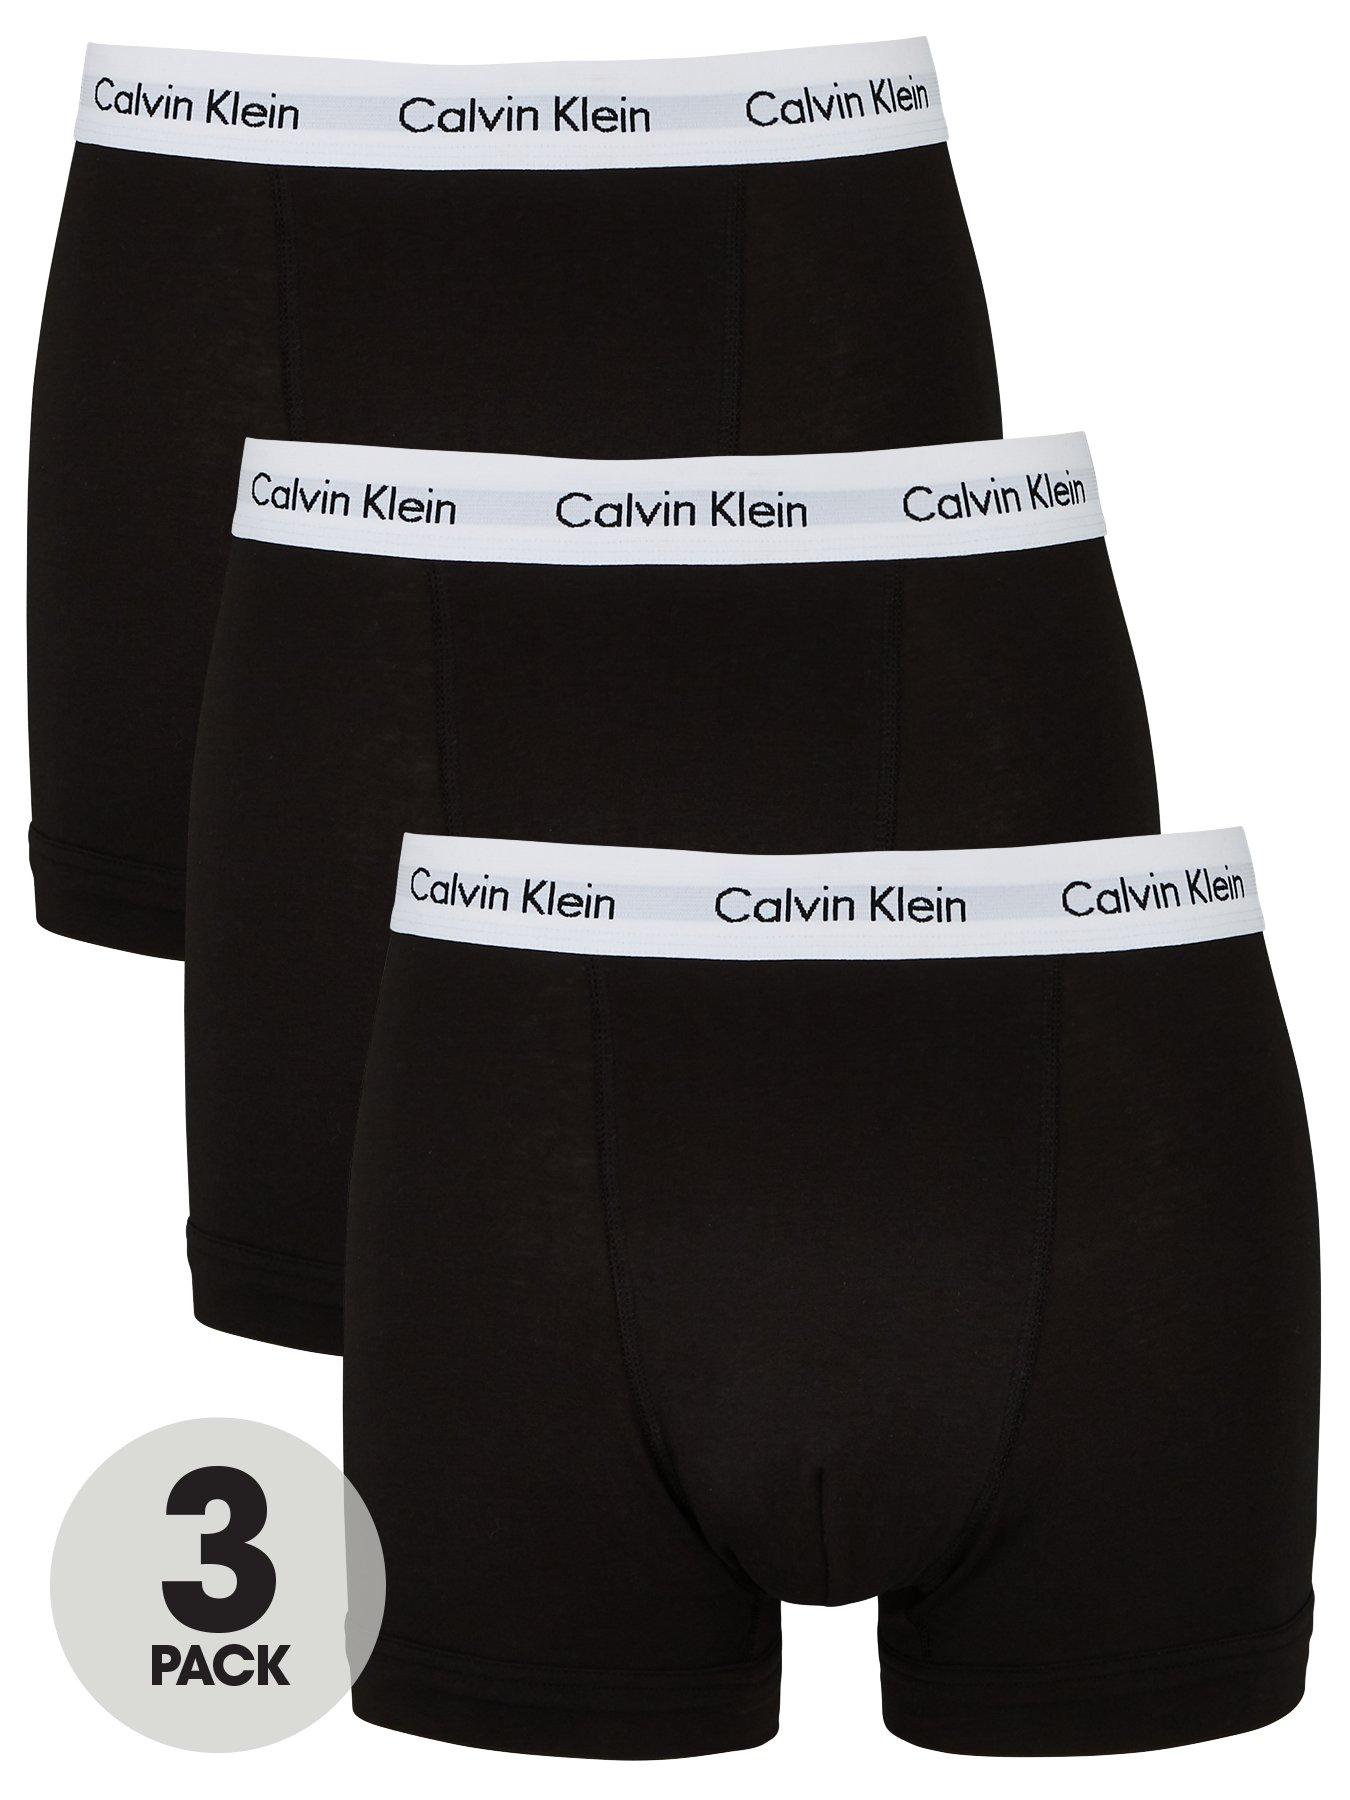 calvin klein men's basics button front boxer briefs